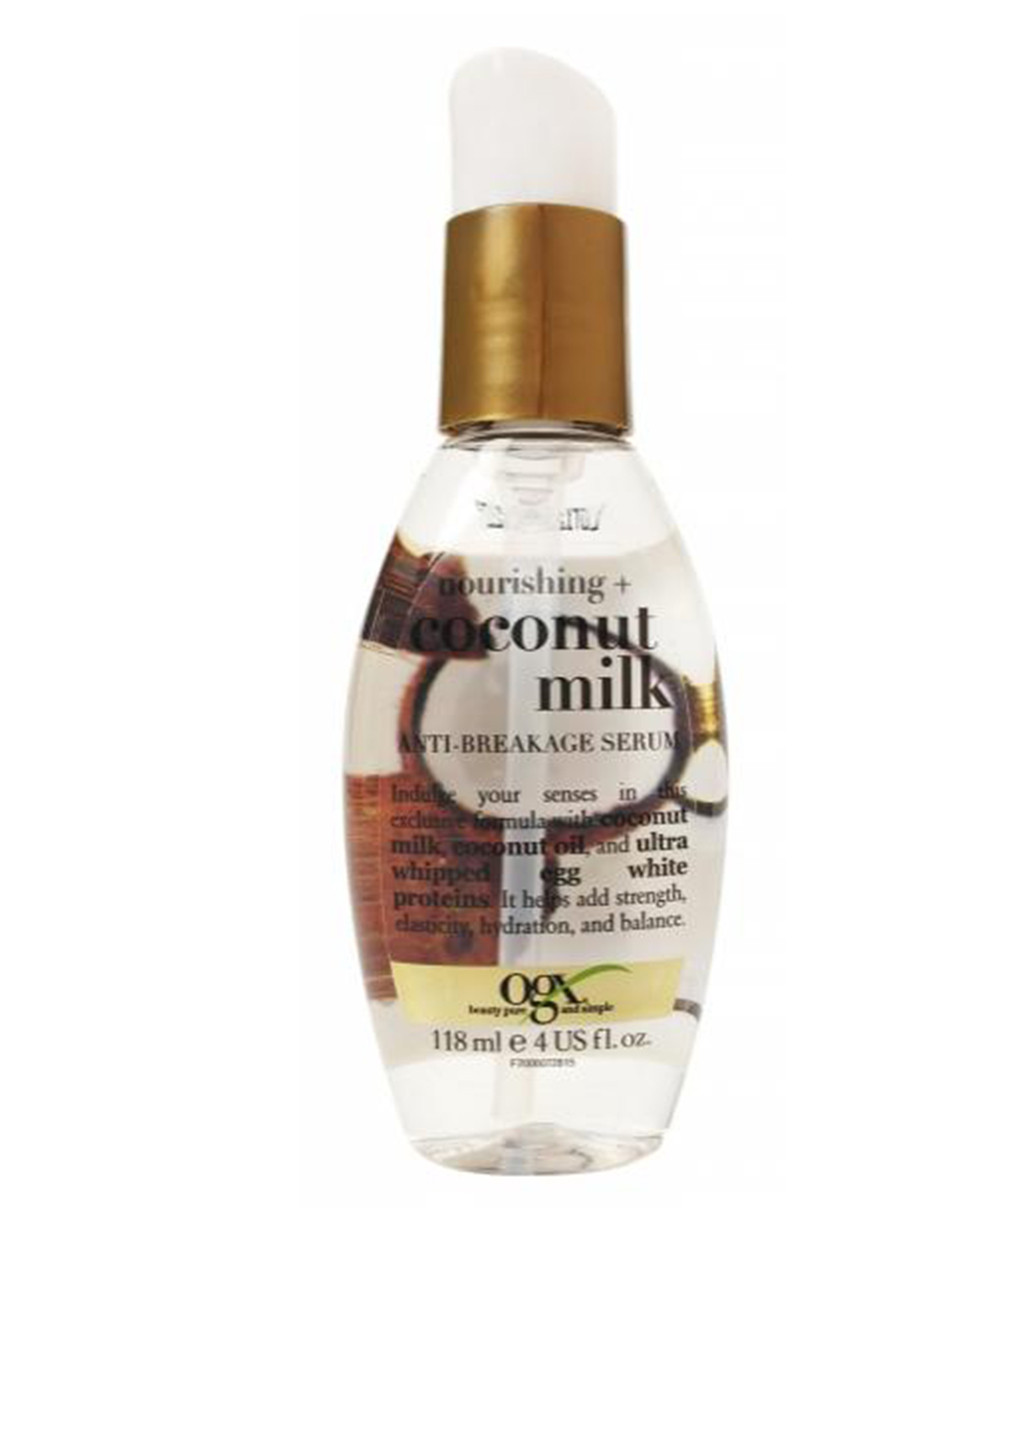 Сыворотка для волос питательная против ломкости, с кокосовым молоком, 118 мл OGX (131708612)